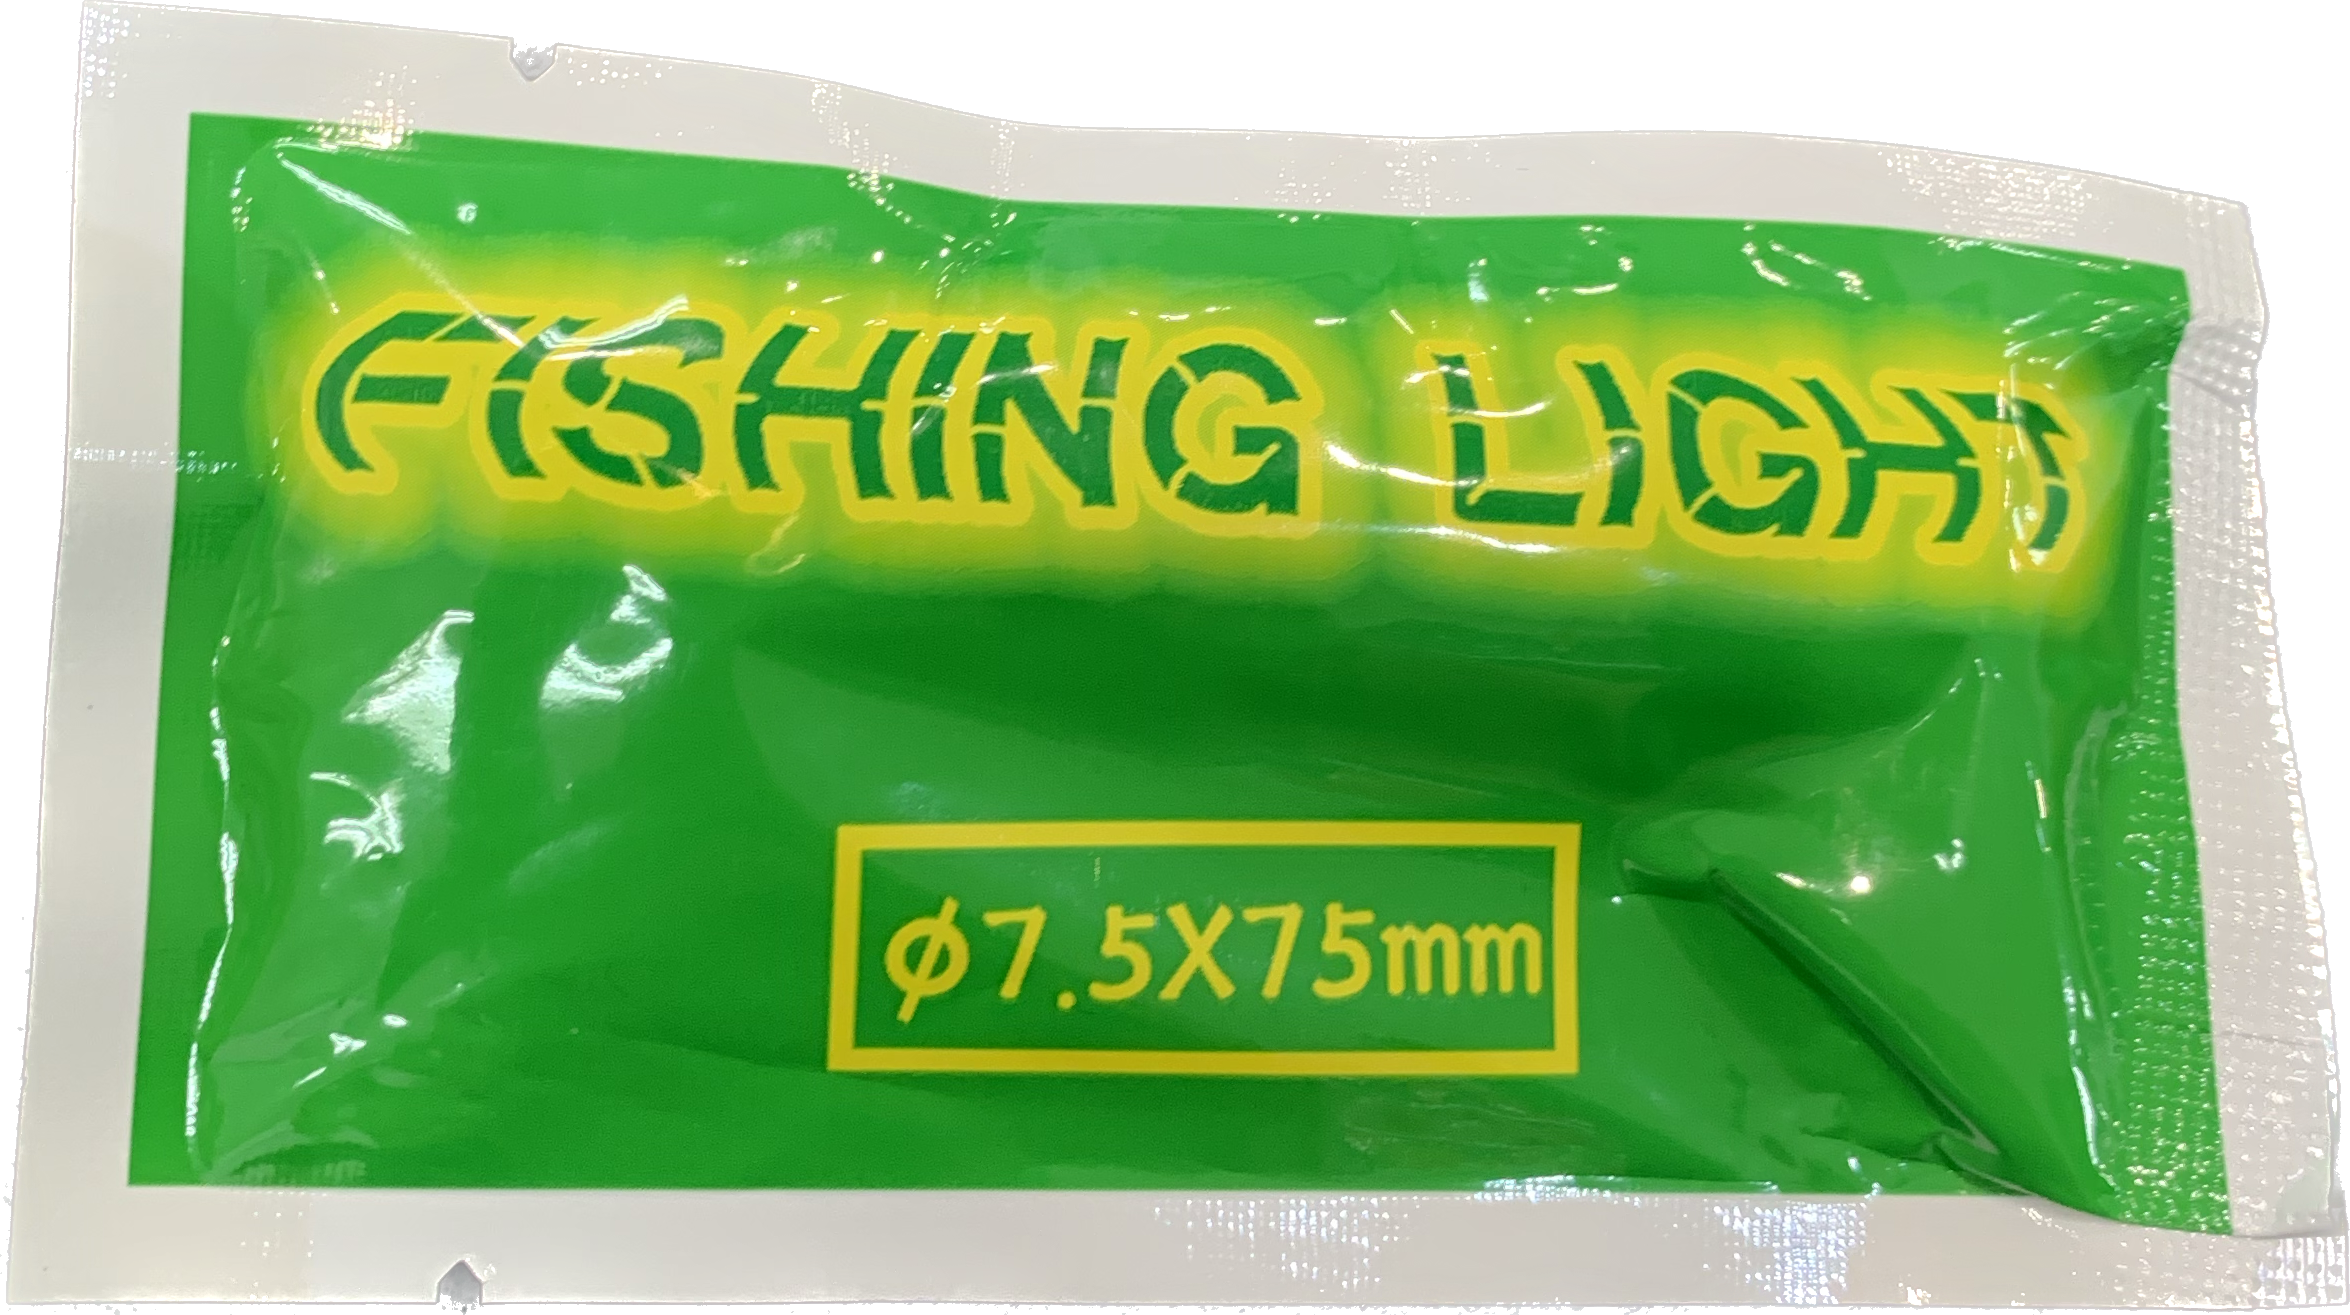 Glow Sticks - Fishing Light – Isofishinglifestyle